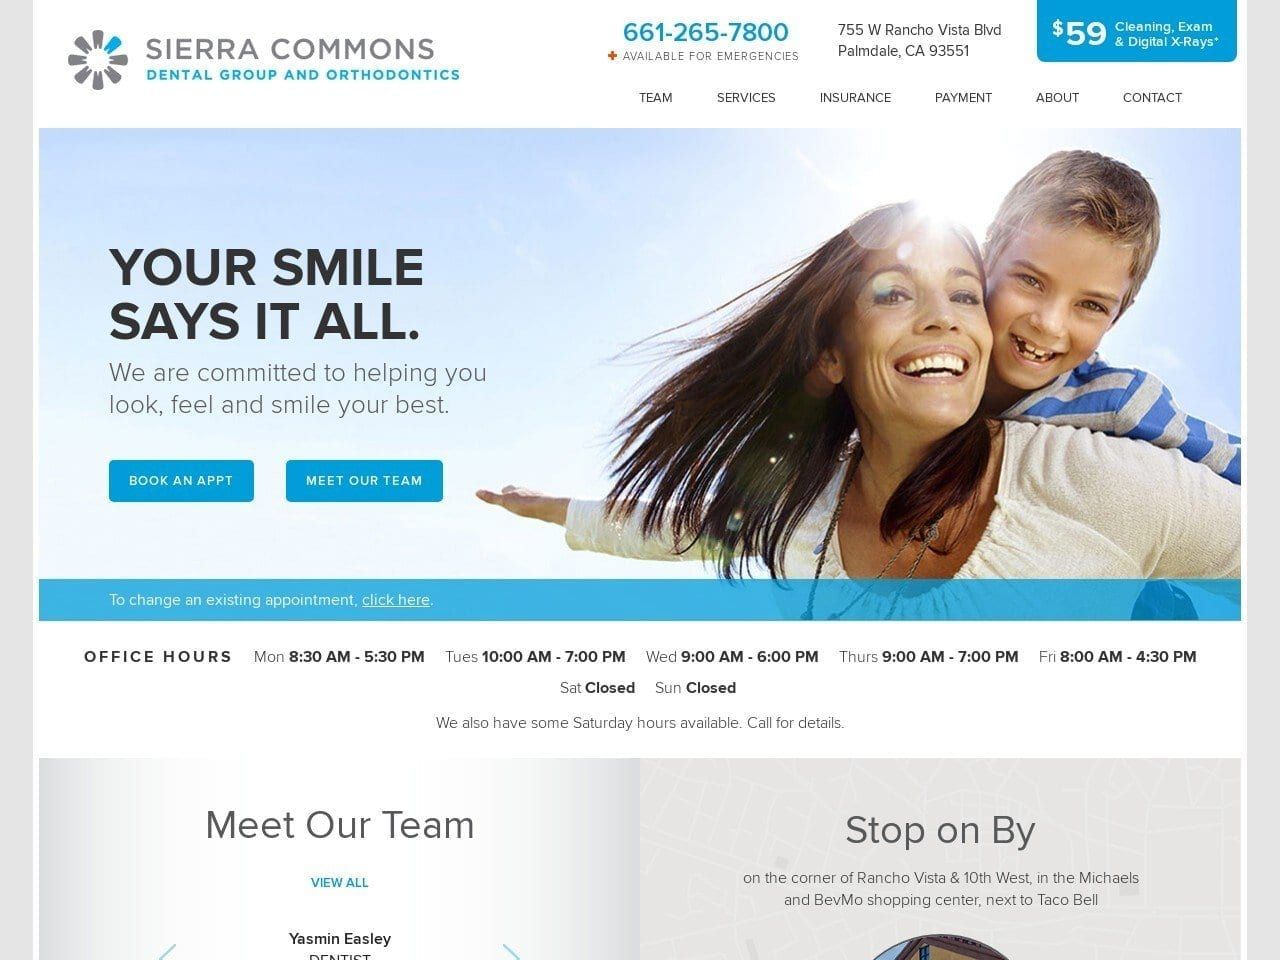 Sierra Commons Dental Group and Orthodontics Website Screenshot from sierracommonsdentalgroup.com